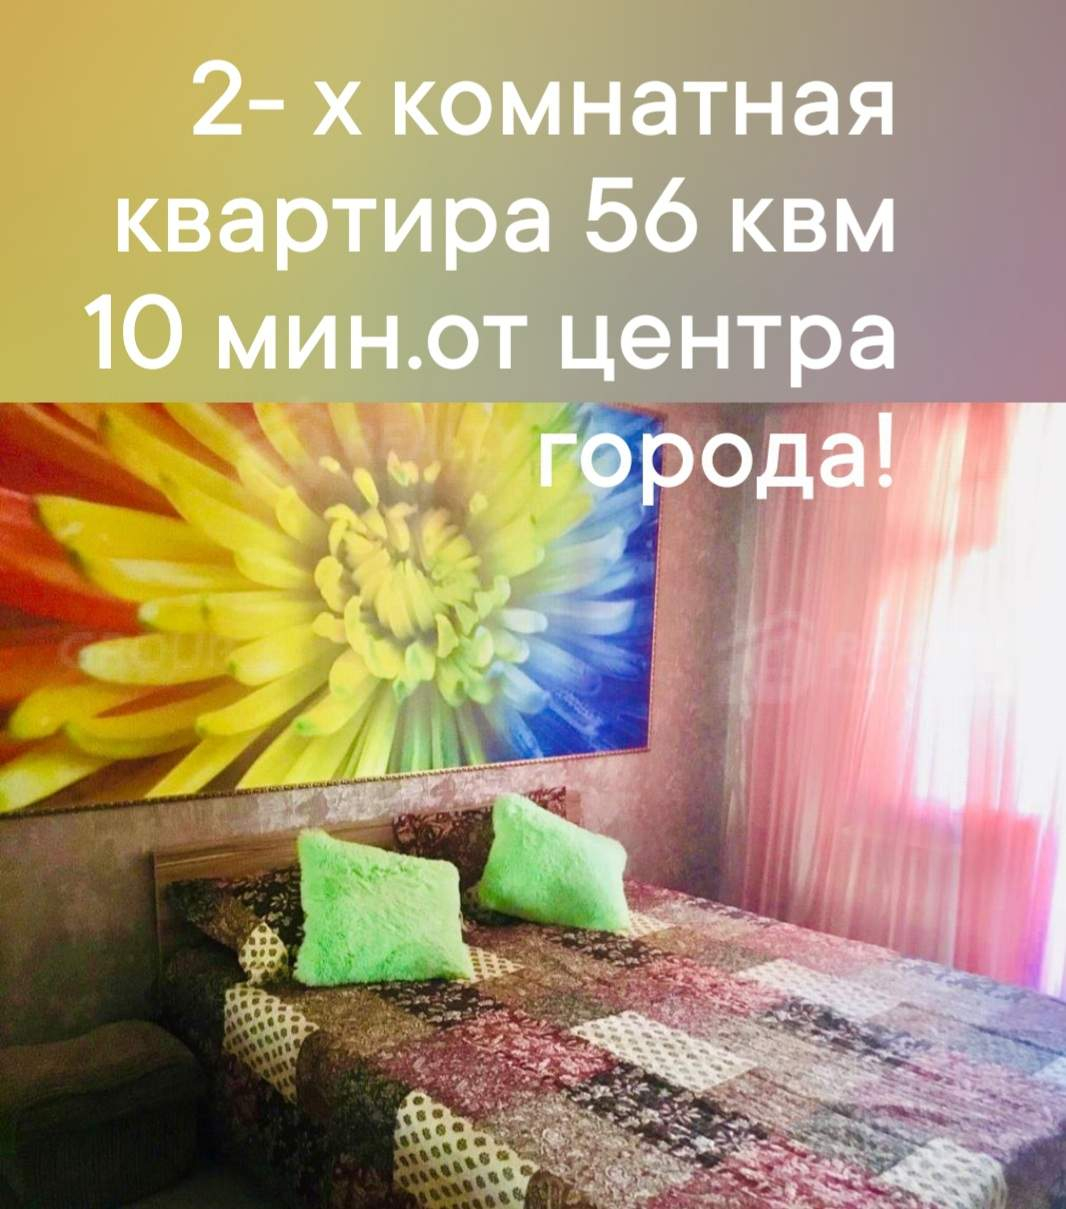 Продажа 2-комнатной квартиры, Симферополь, И.Г.Лексина улица,  д.56